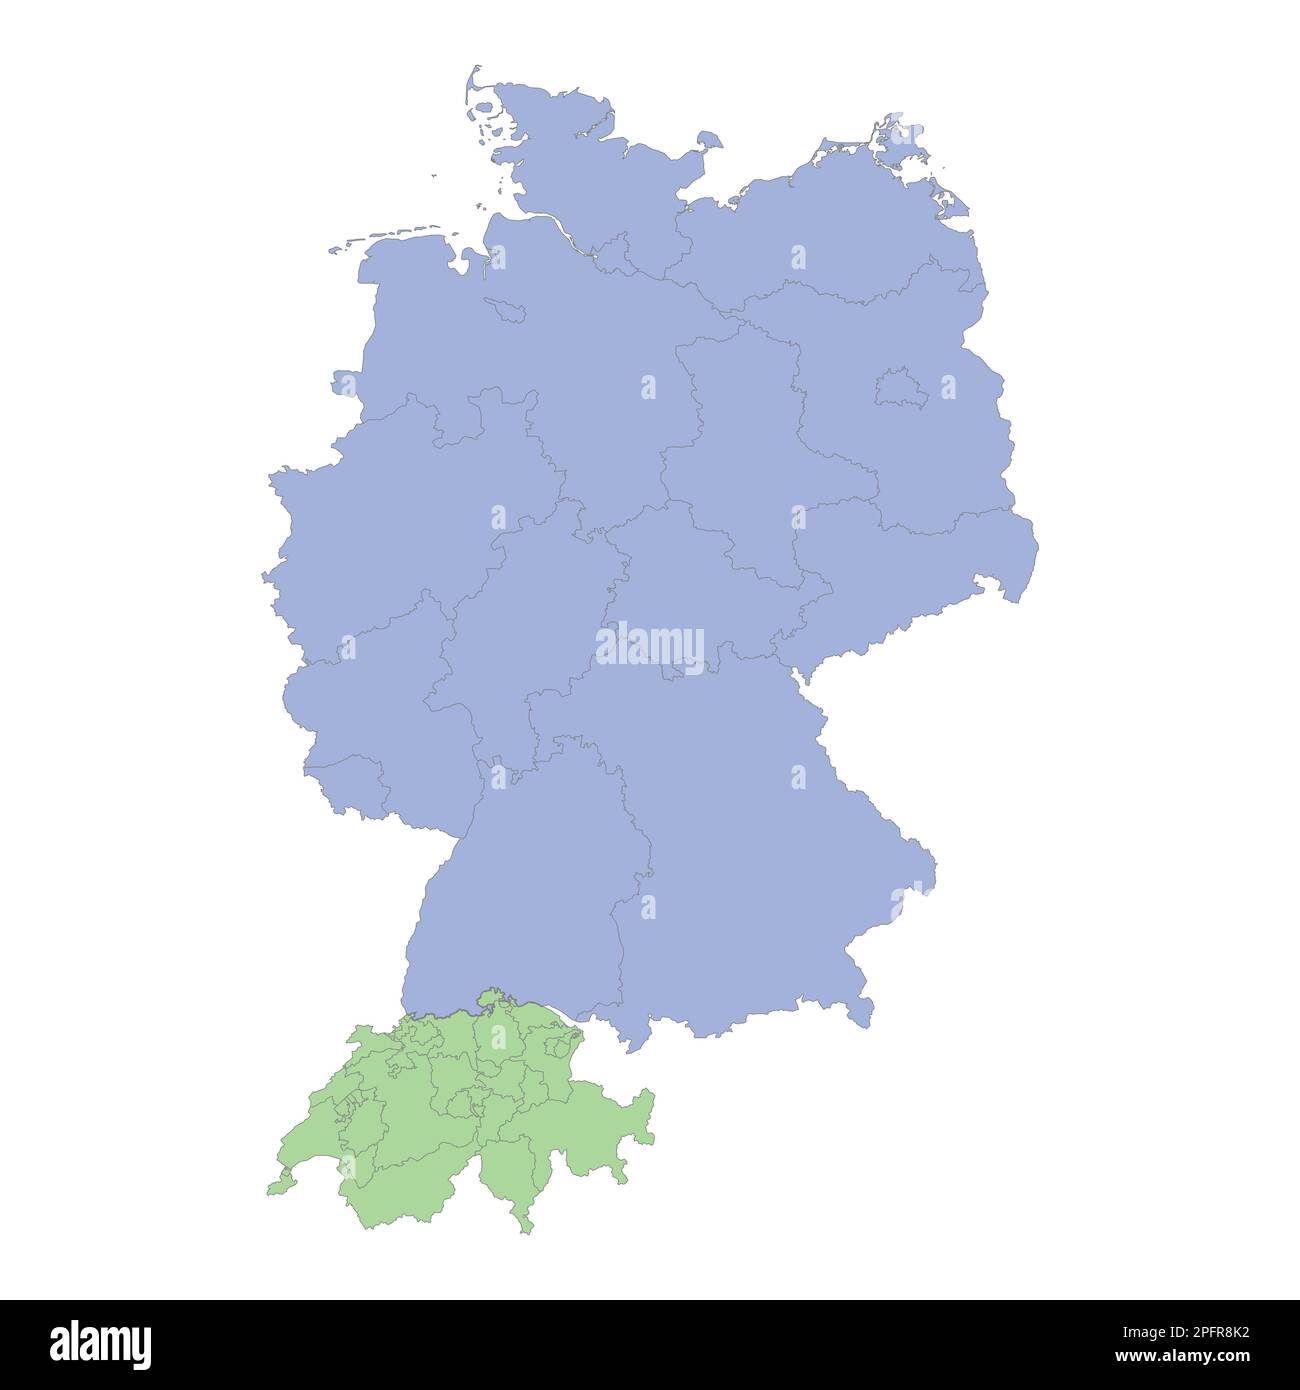 Mappa politica di alta qualità della Germania e della Svizzera con i confini delle regioni o delle province. Illustrazione vettoriale Illustrazione Vettoriale